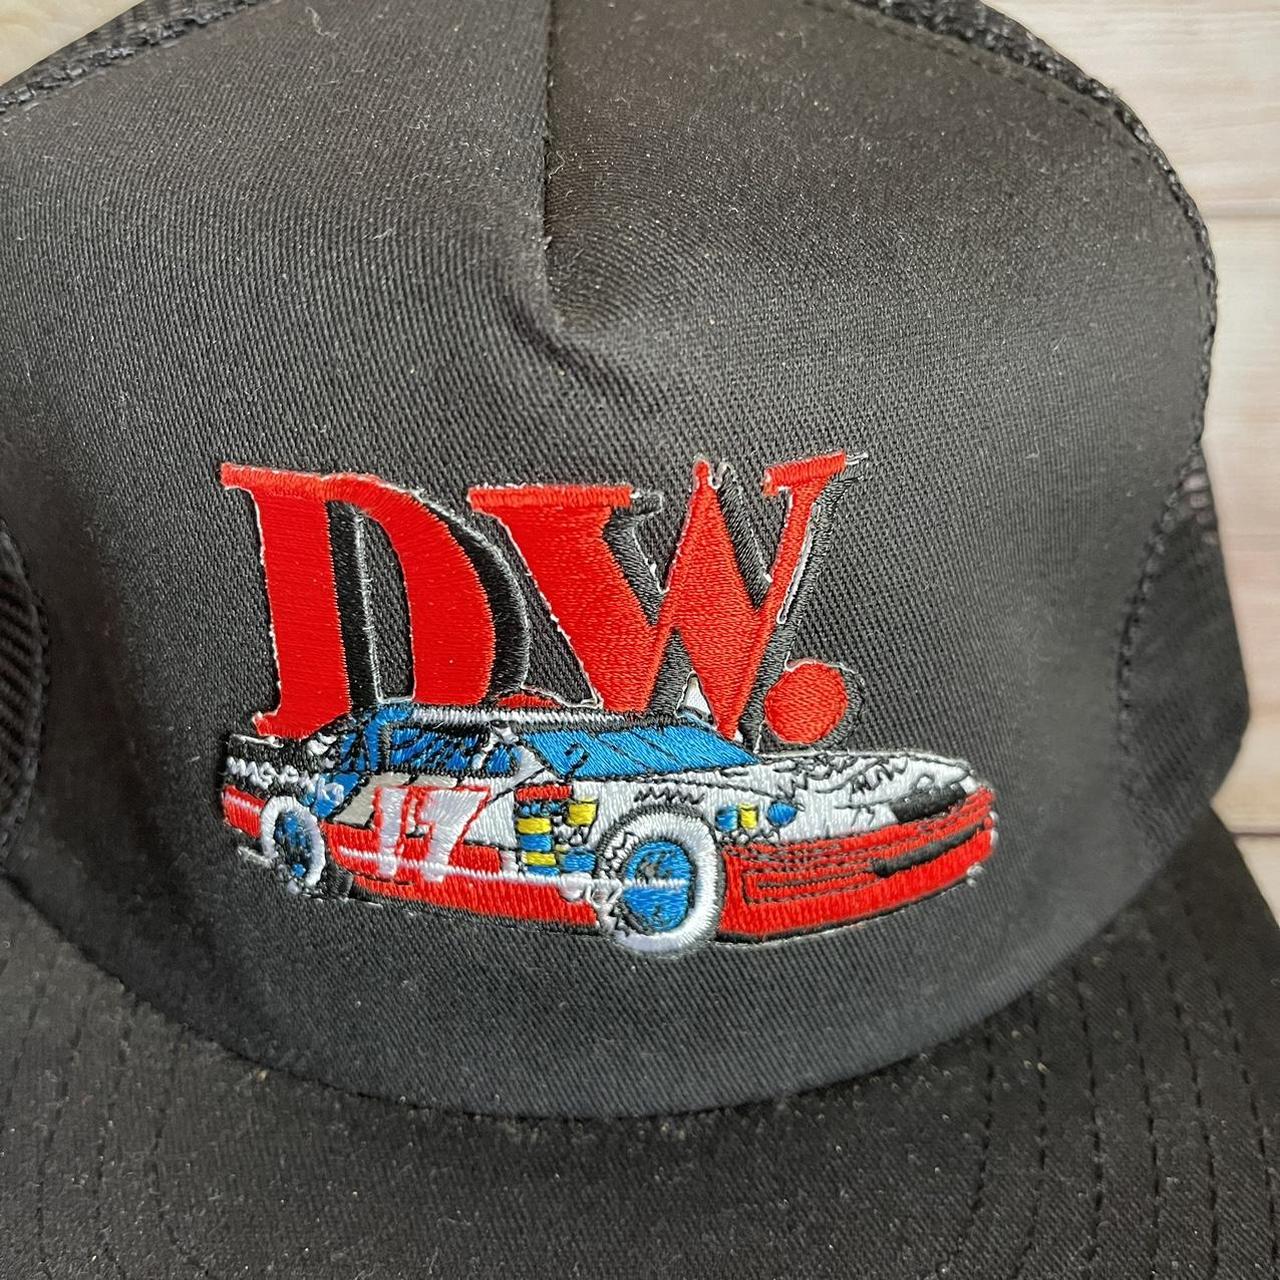 DW Men's Black Hat (2)